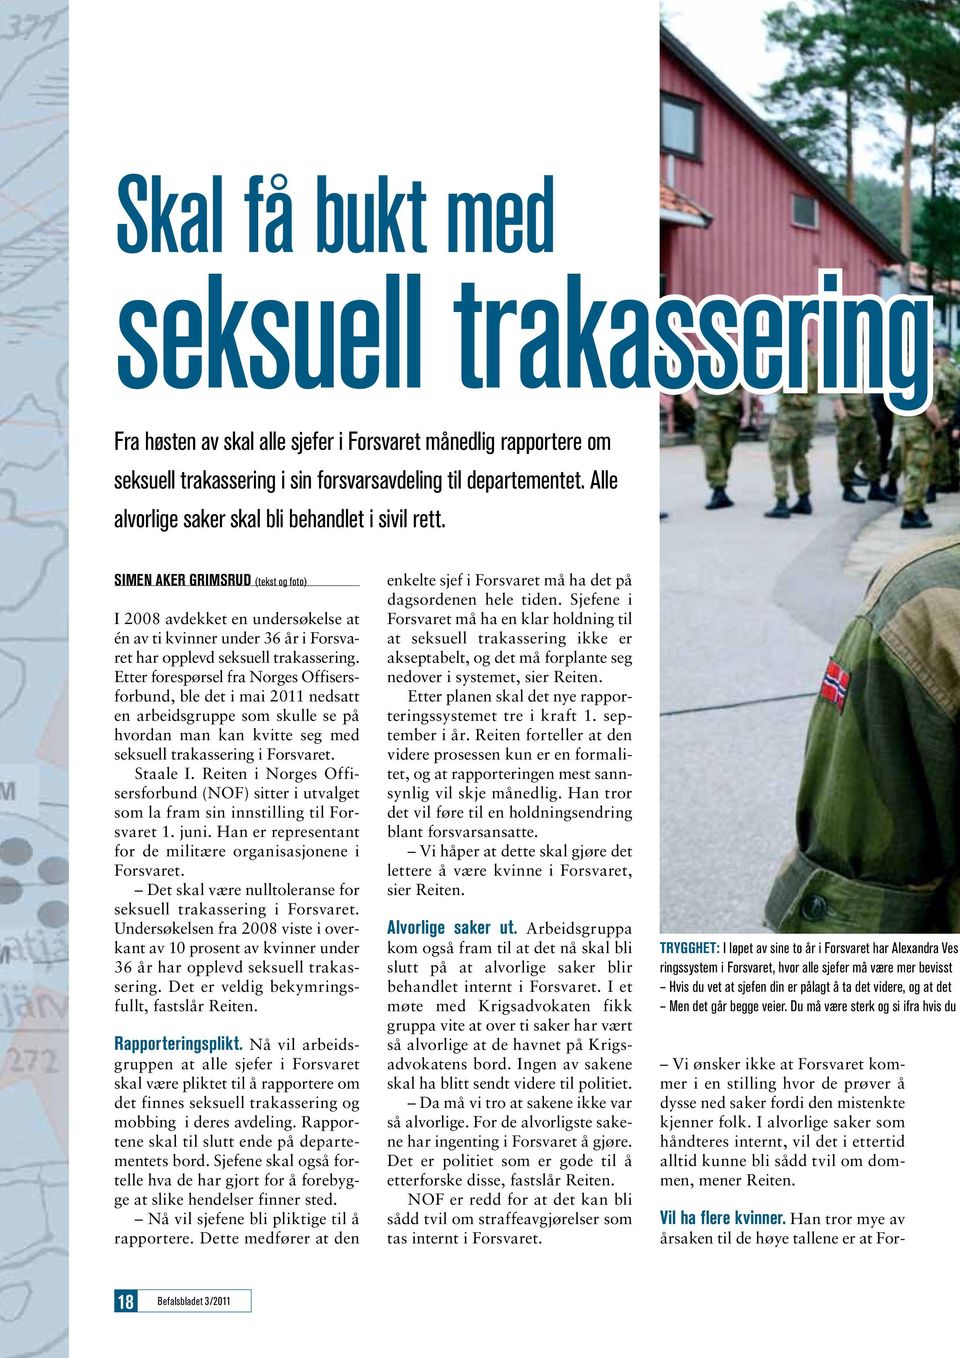 Etter forespørsel fra Norges Offisersforbund, ble det i mai 2011 nedsatt en arbeidsgruppe som skulle se på hvordan man kan kvitte seg med seksuell trakassering i Forsvaret. Staale I.